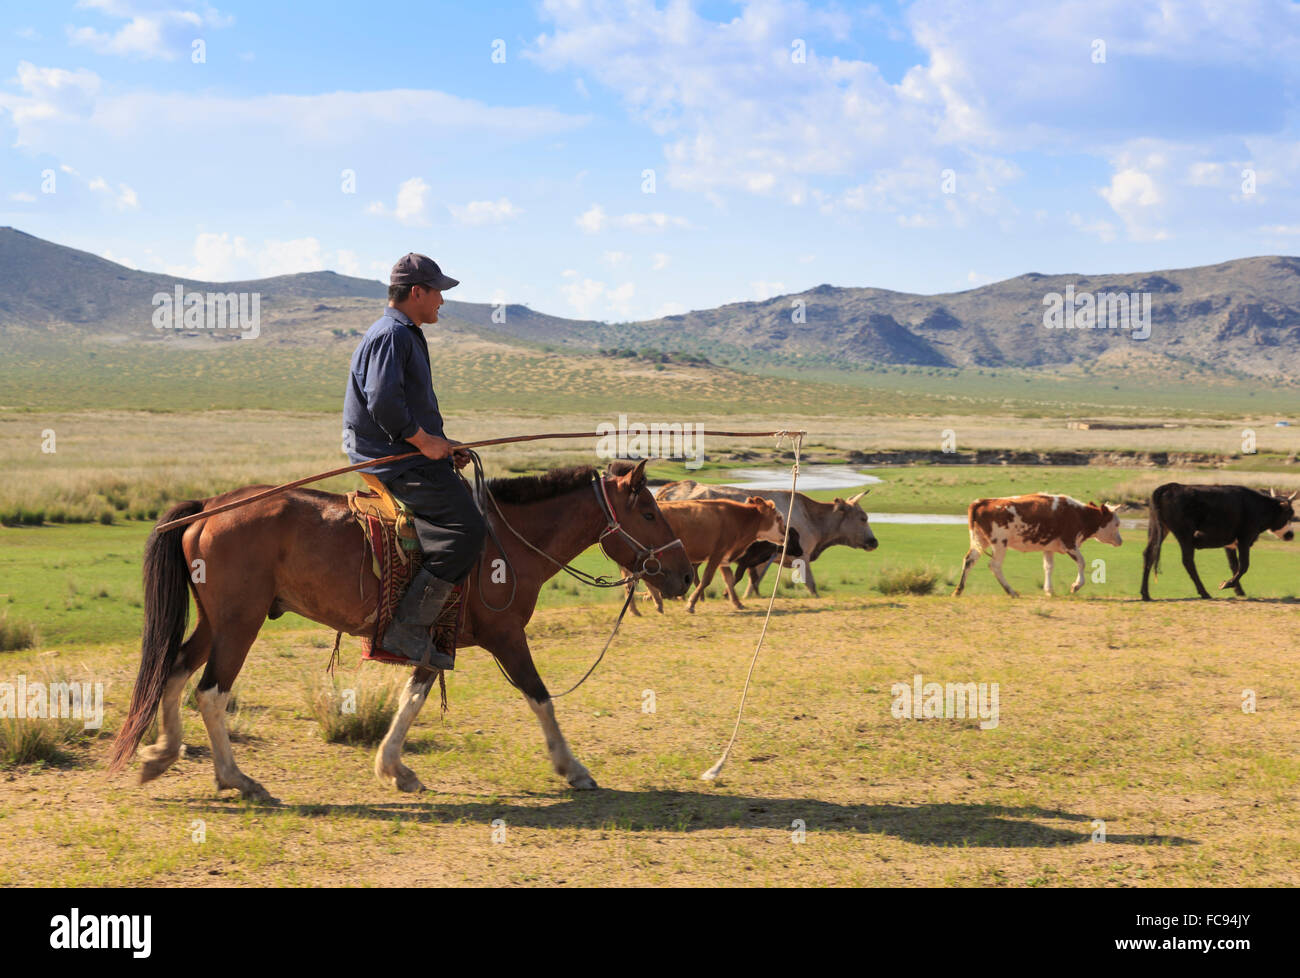 Les vaches des troupeaux nomades montés en été, holding uurga, Khogno Khan Uul, réserve naturelle de Gurvanbulag Bulgan, province, la Mongolie Banque D'Images